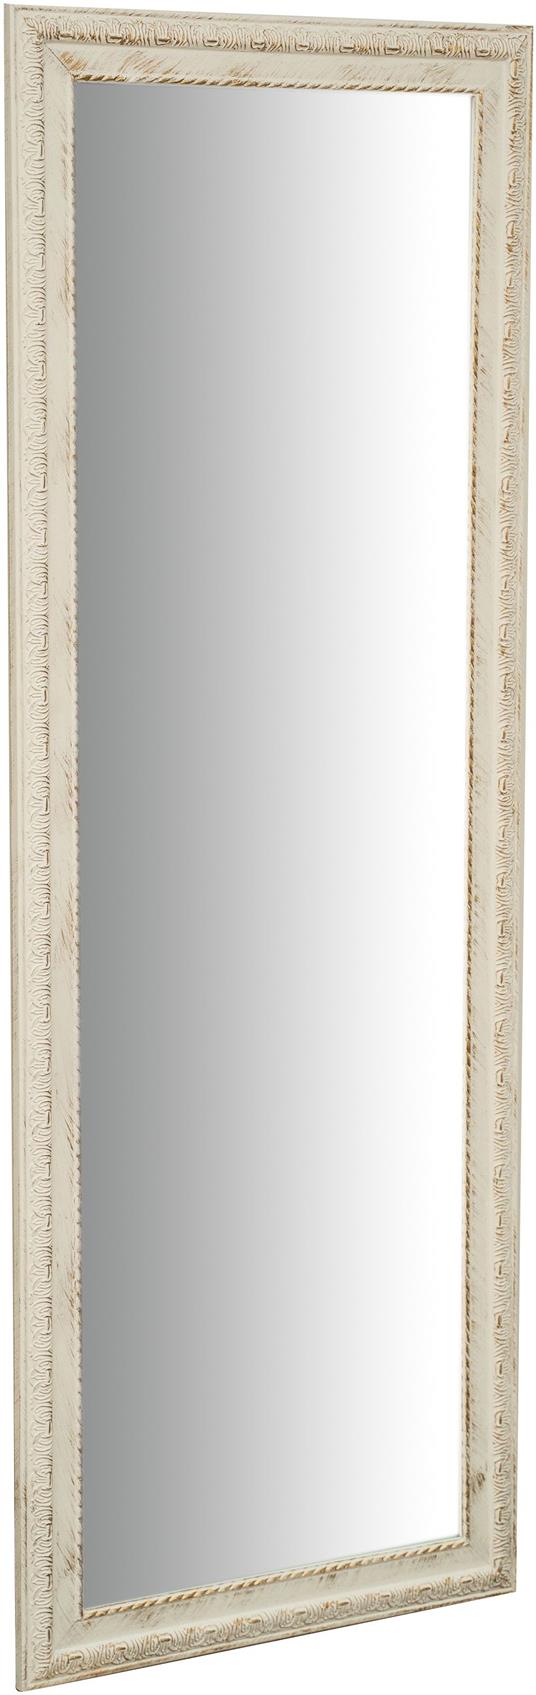 Specchio da parete lungo 140x50x4 cm Specchio grande Specchio camera da  letto Specchio shabby chic Specchio parete lungo - Biscottini - Idee regalo